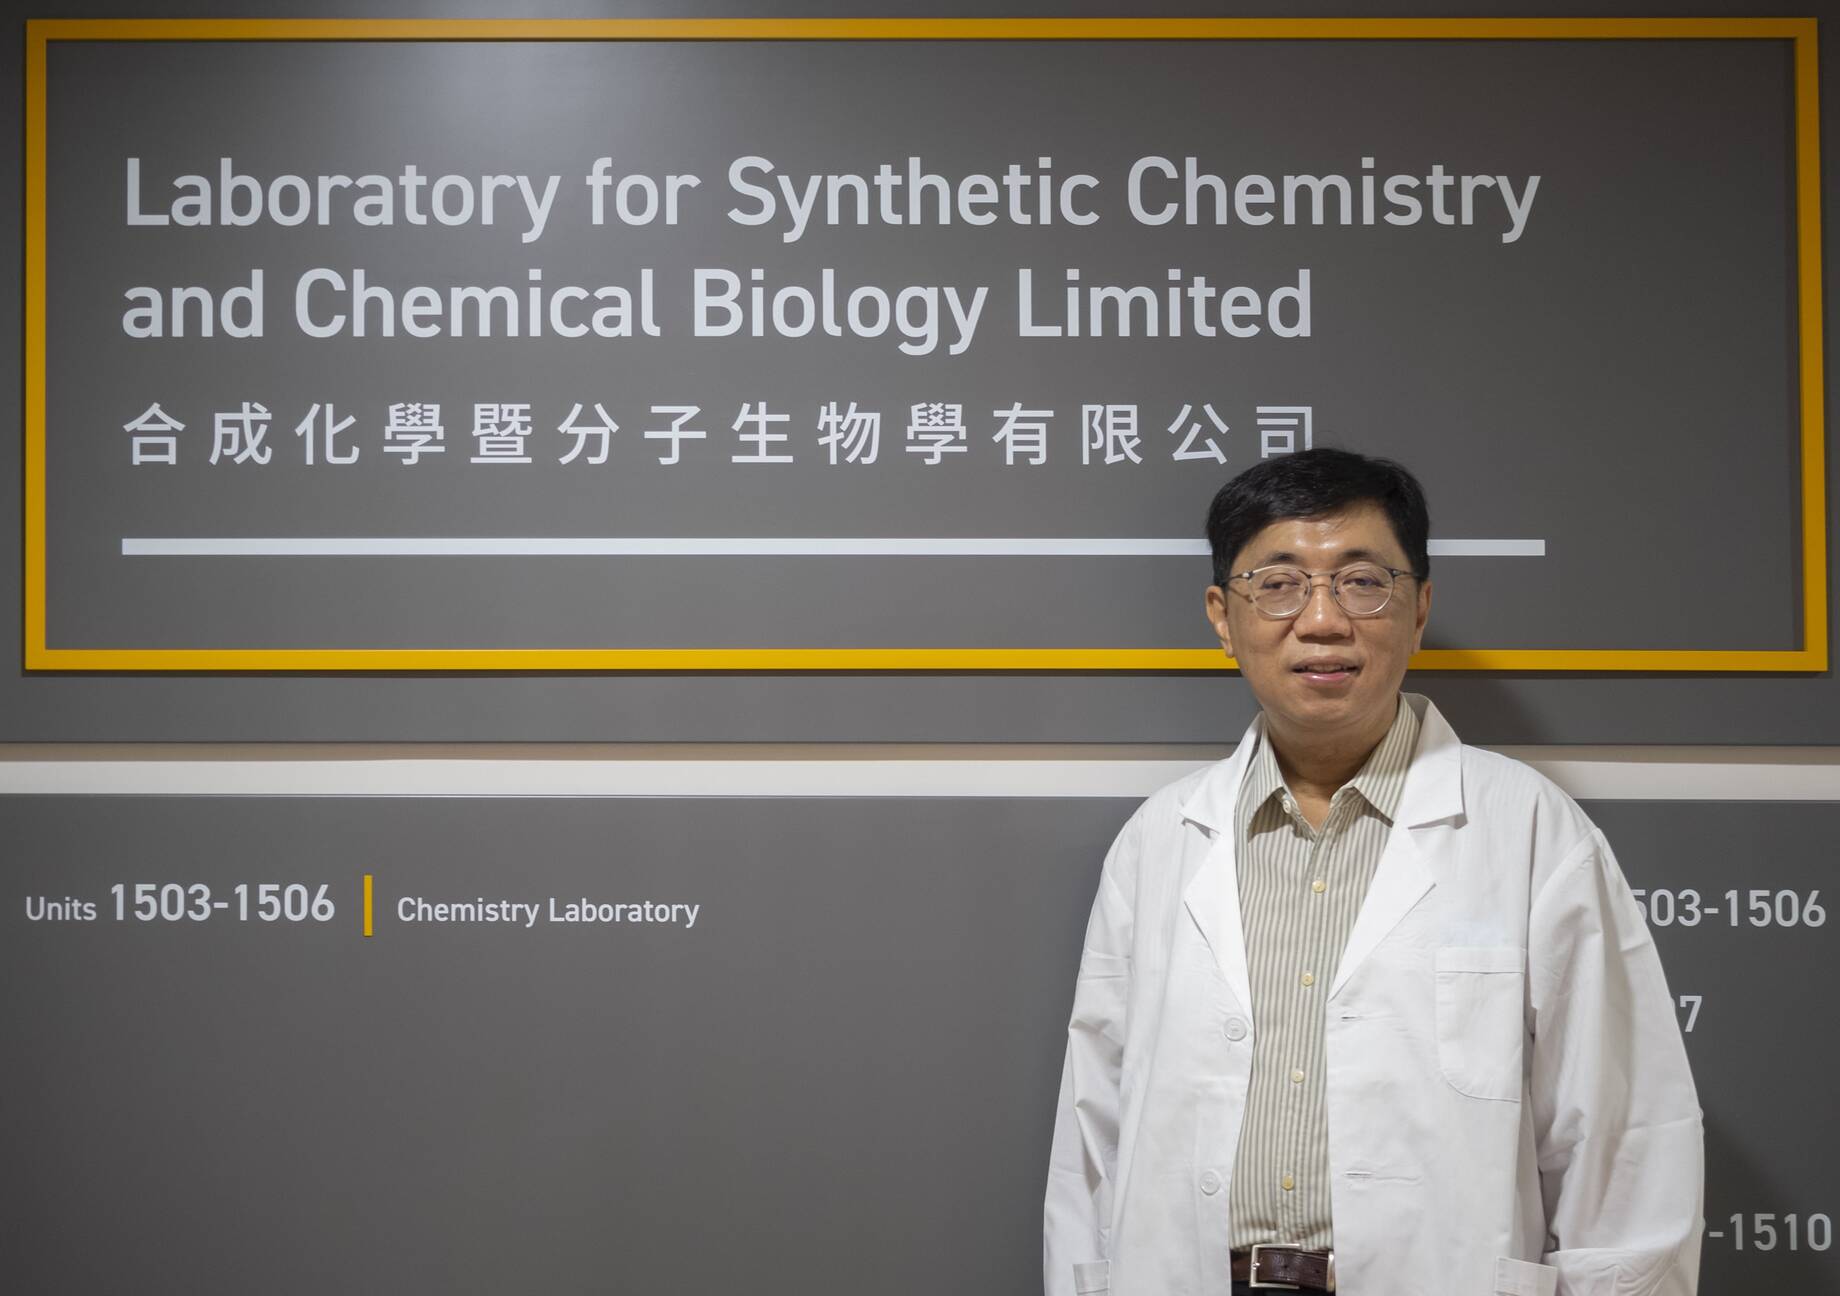 支教授相信創新的合成化學與化學生物學的技術將能研發出新的治療藥物。